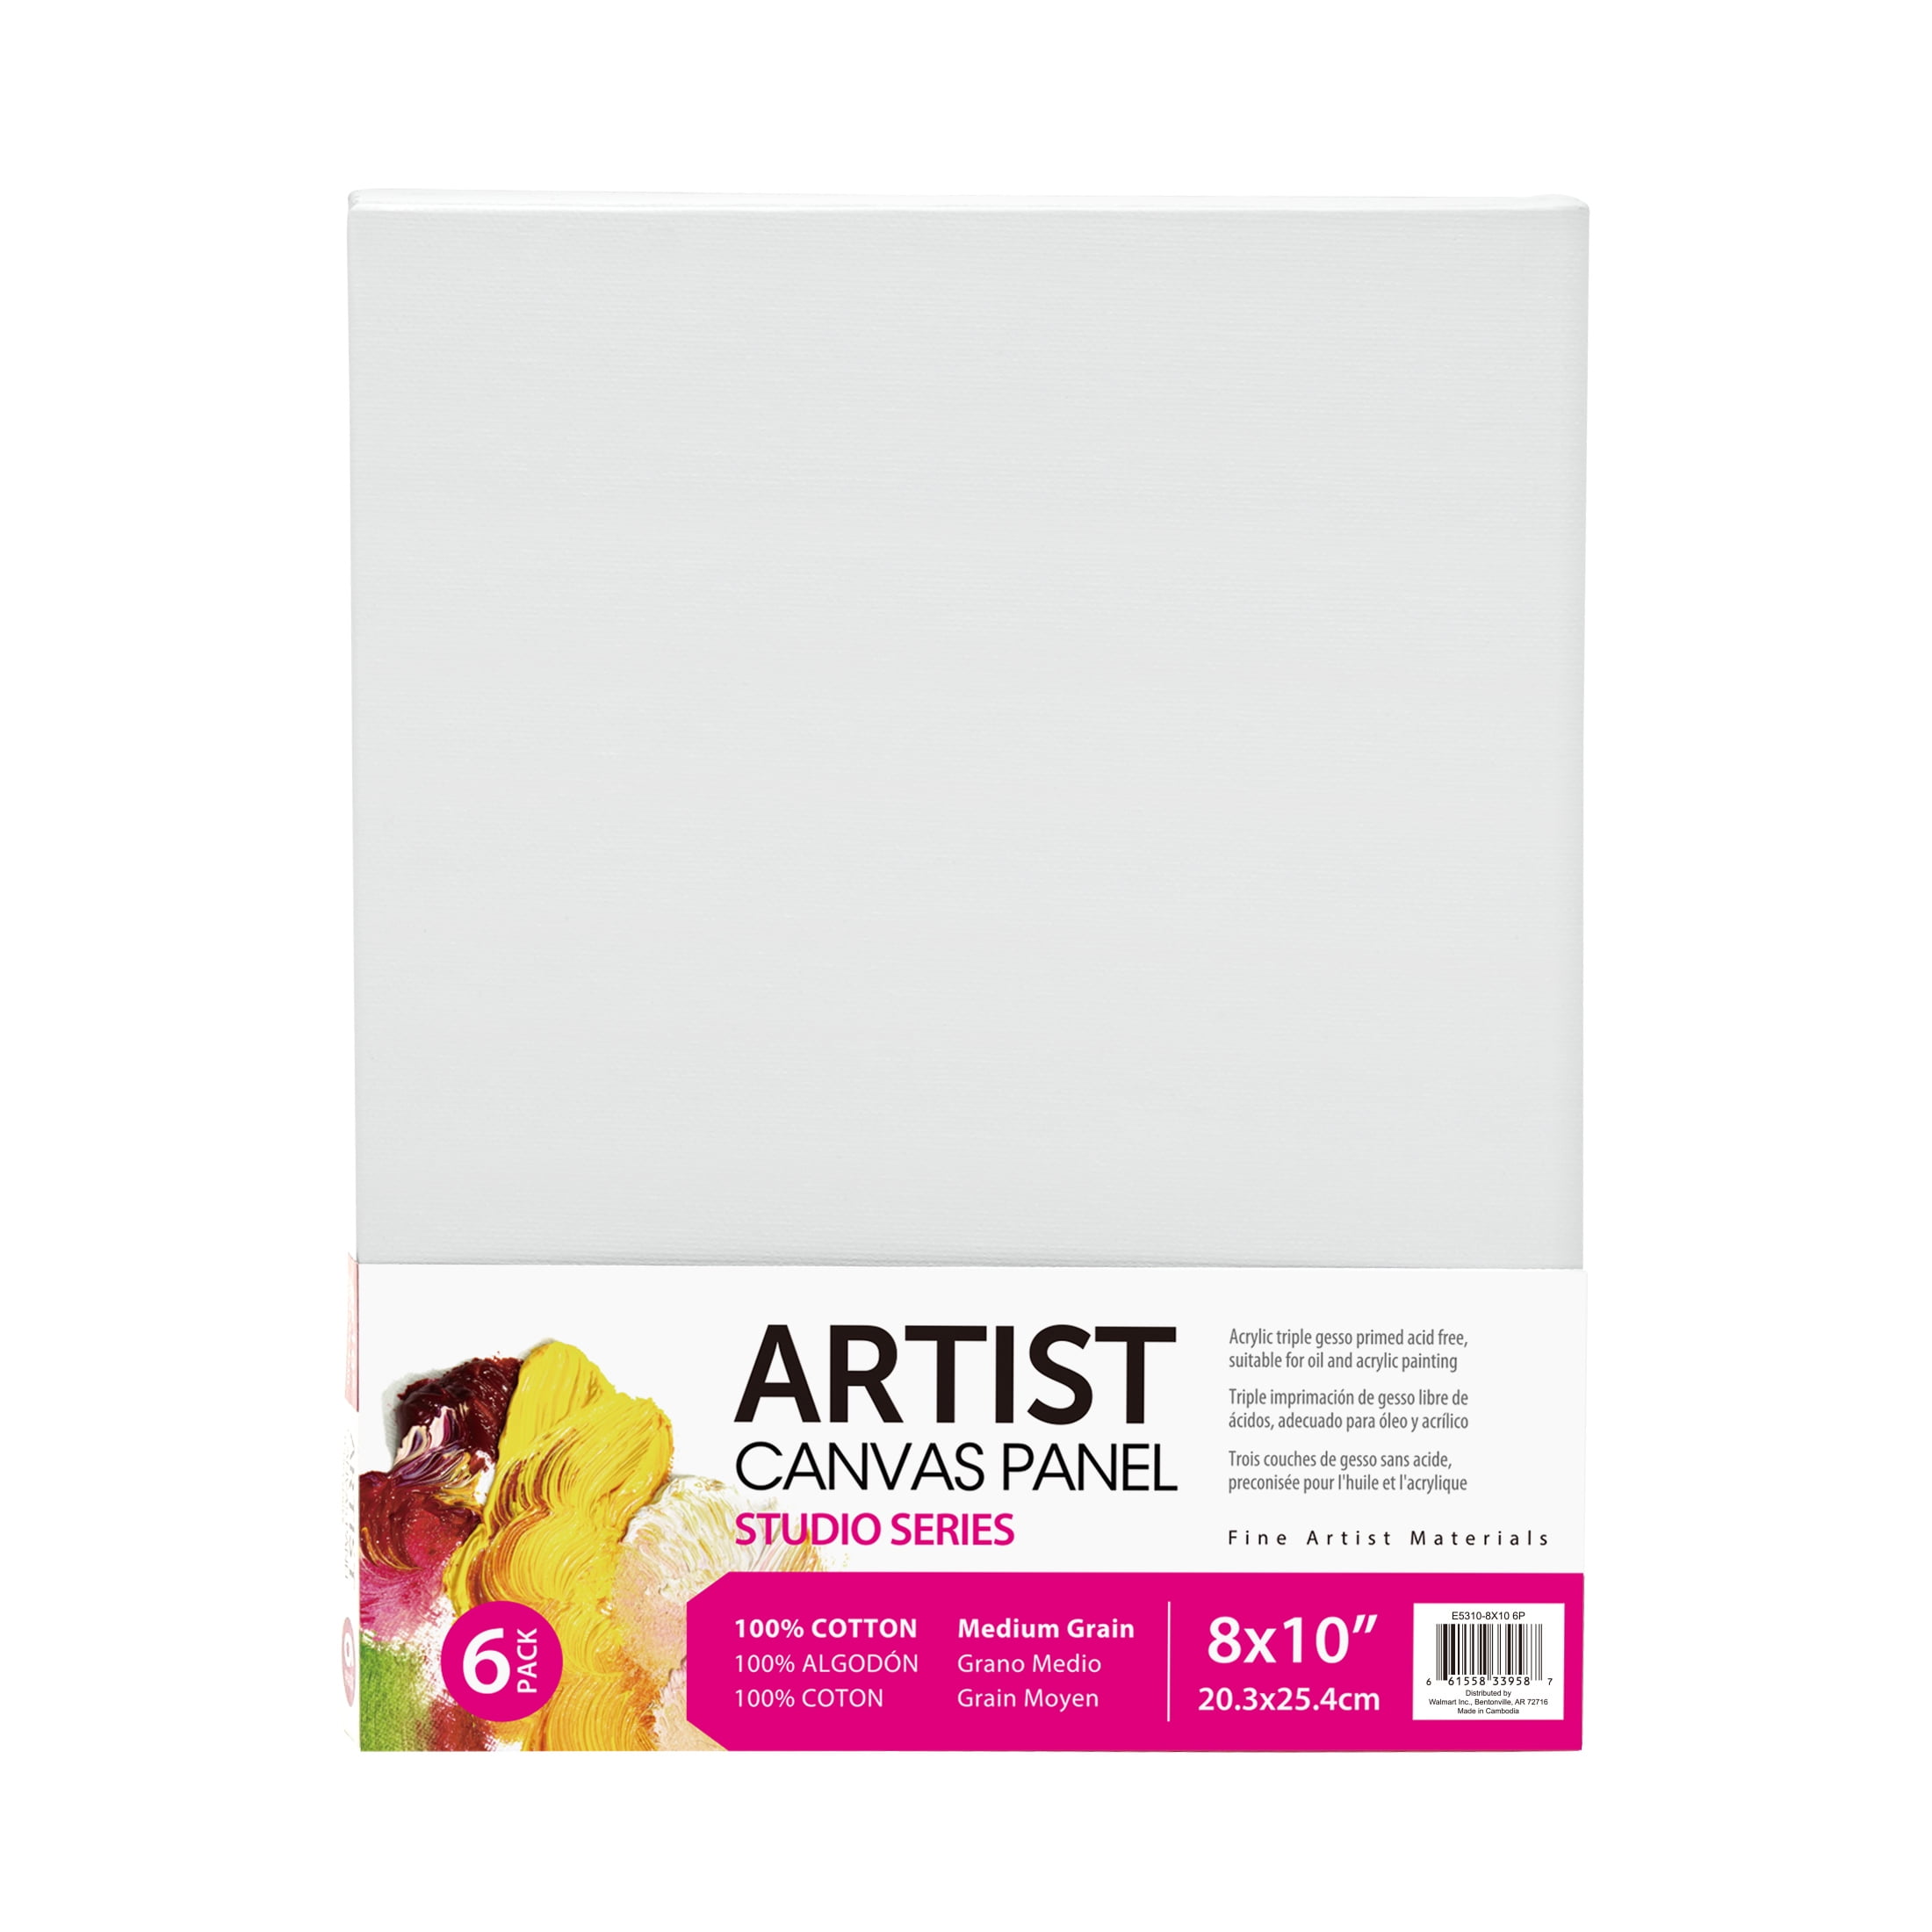 Studio Canvas Panel, 100% Cotton Acid Free White Canvas, 8"X10", 6 Pieces